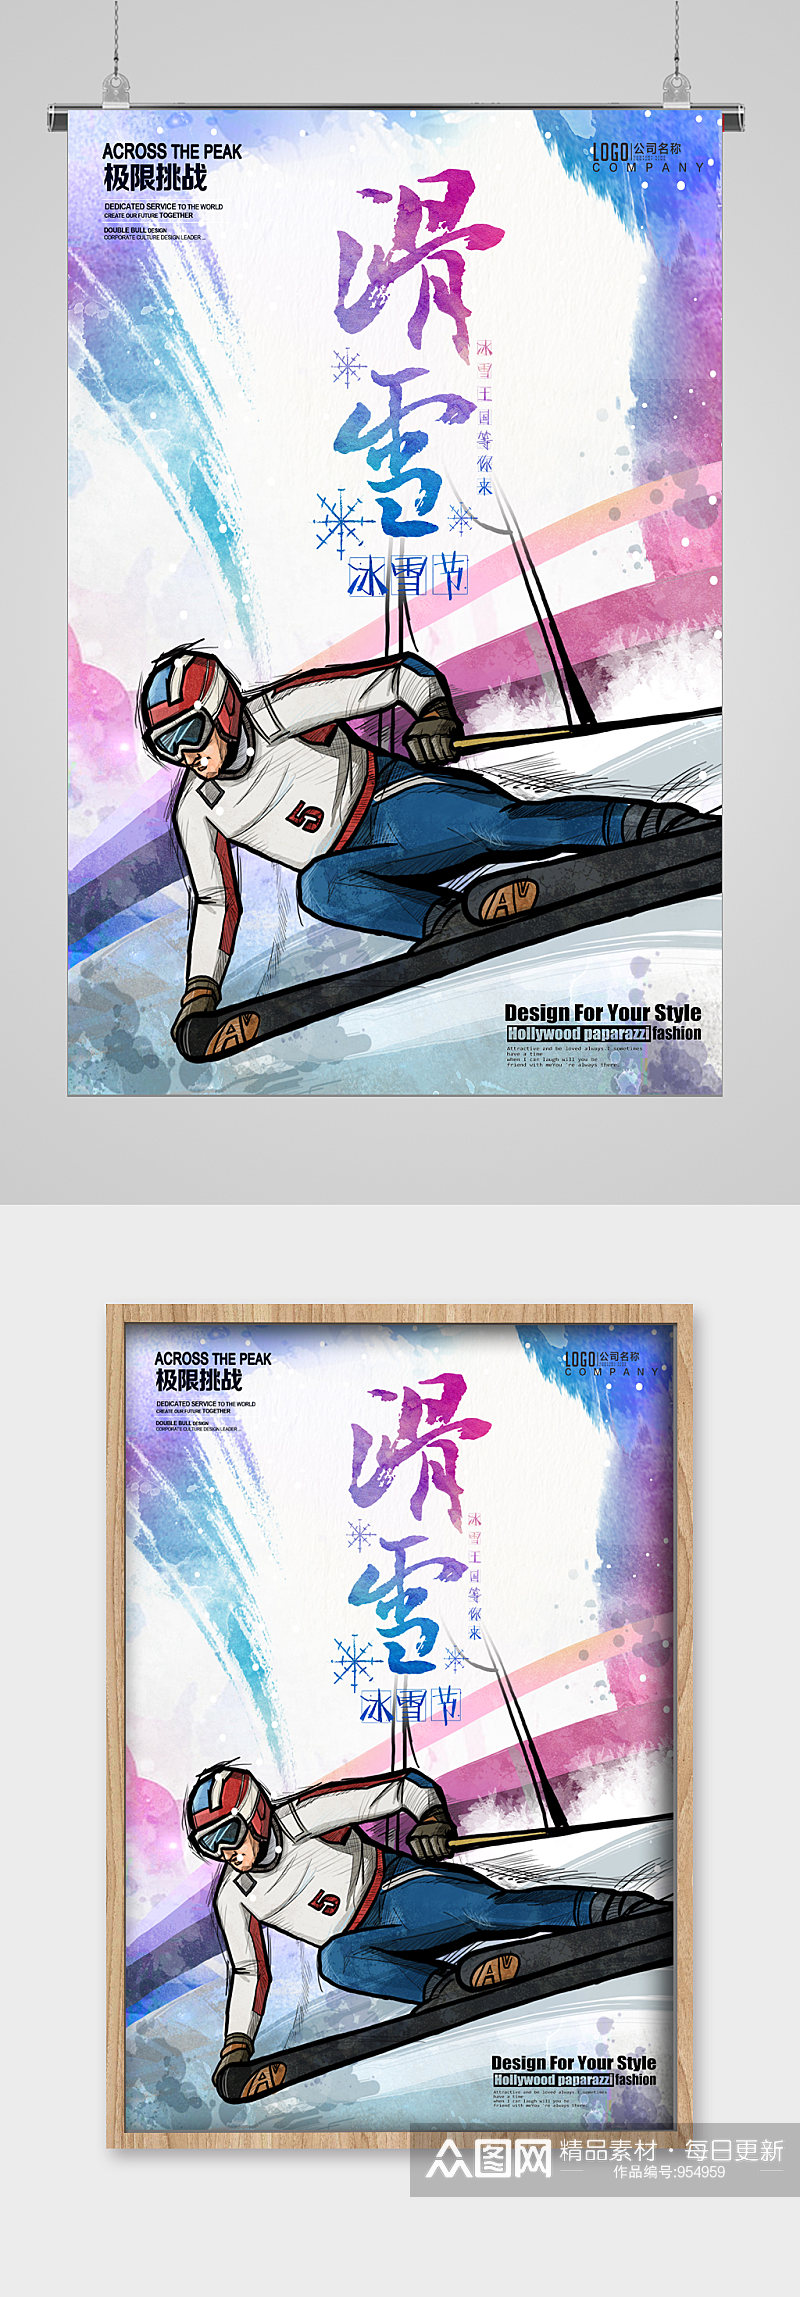 冬季滑雪运动宣传海报素材